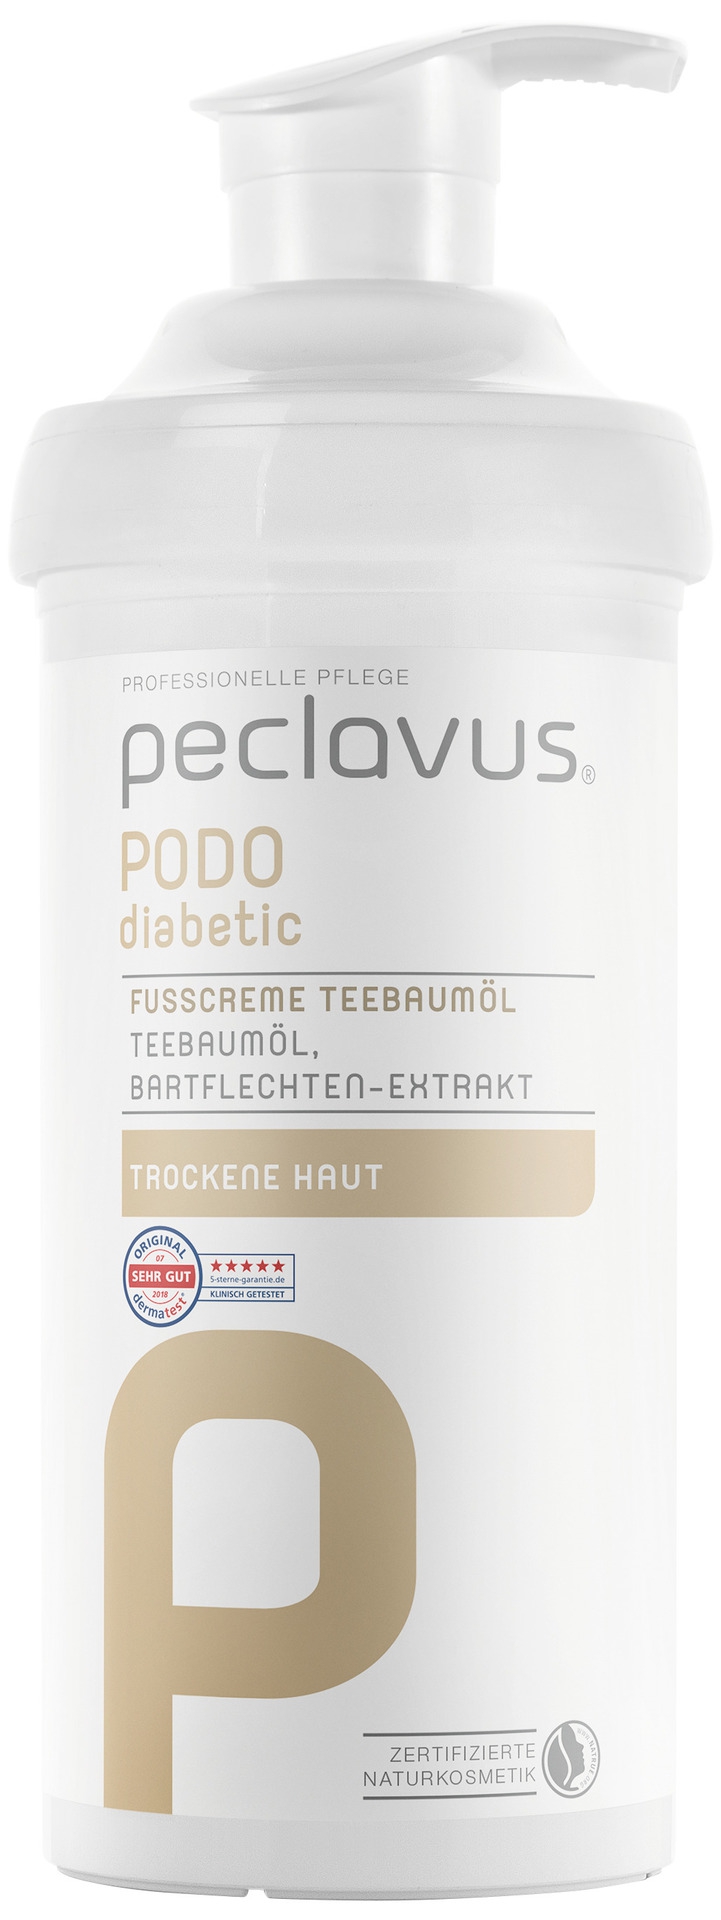 Peclavus PODOdiabetic Fußcreme Teebaumöl | 500 ml